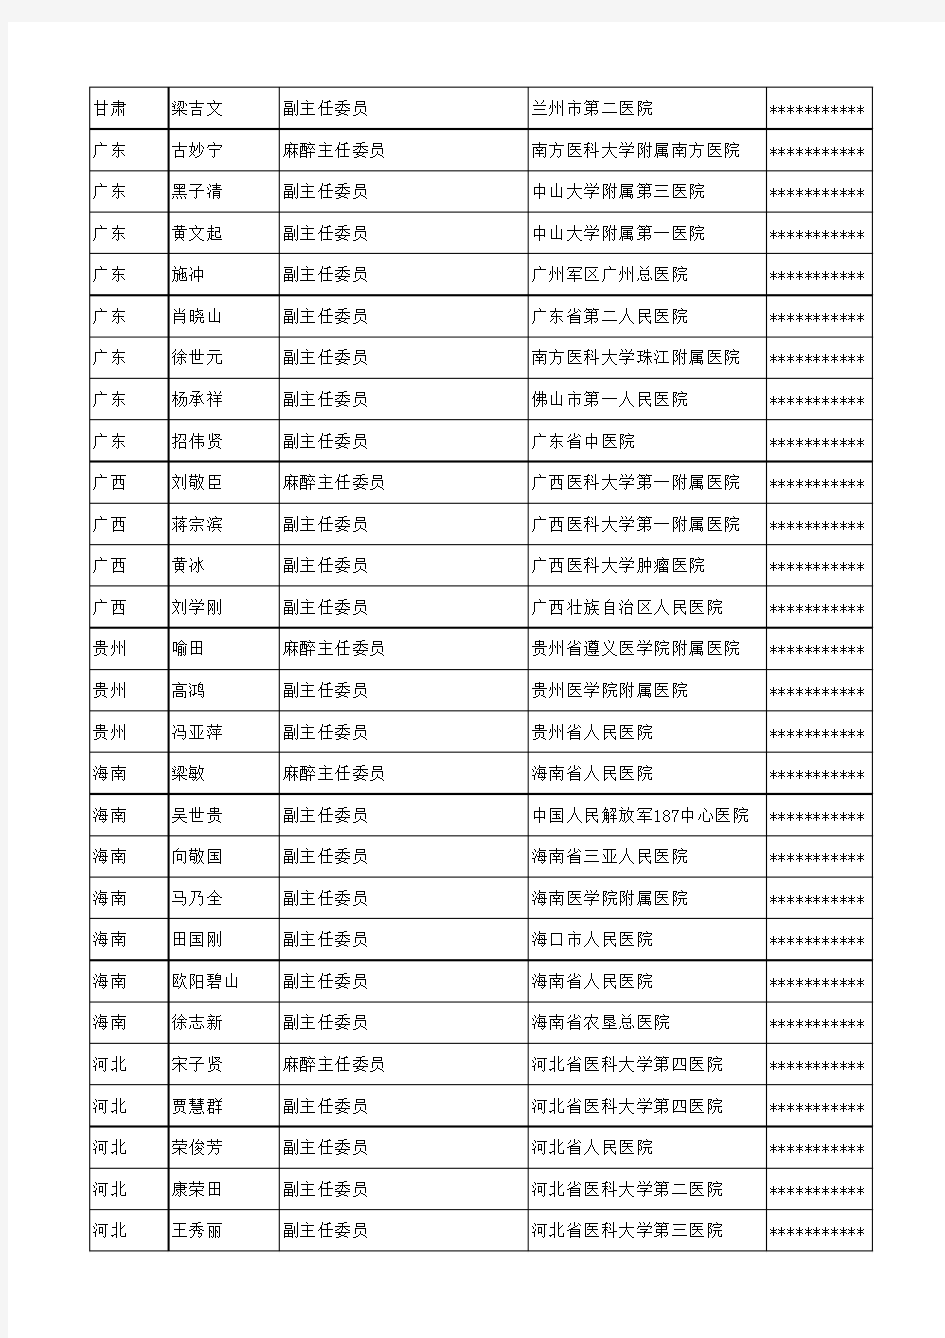 2012年各省麻醉组委名单